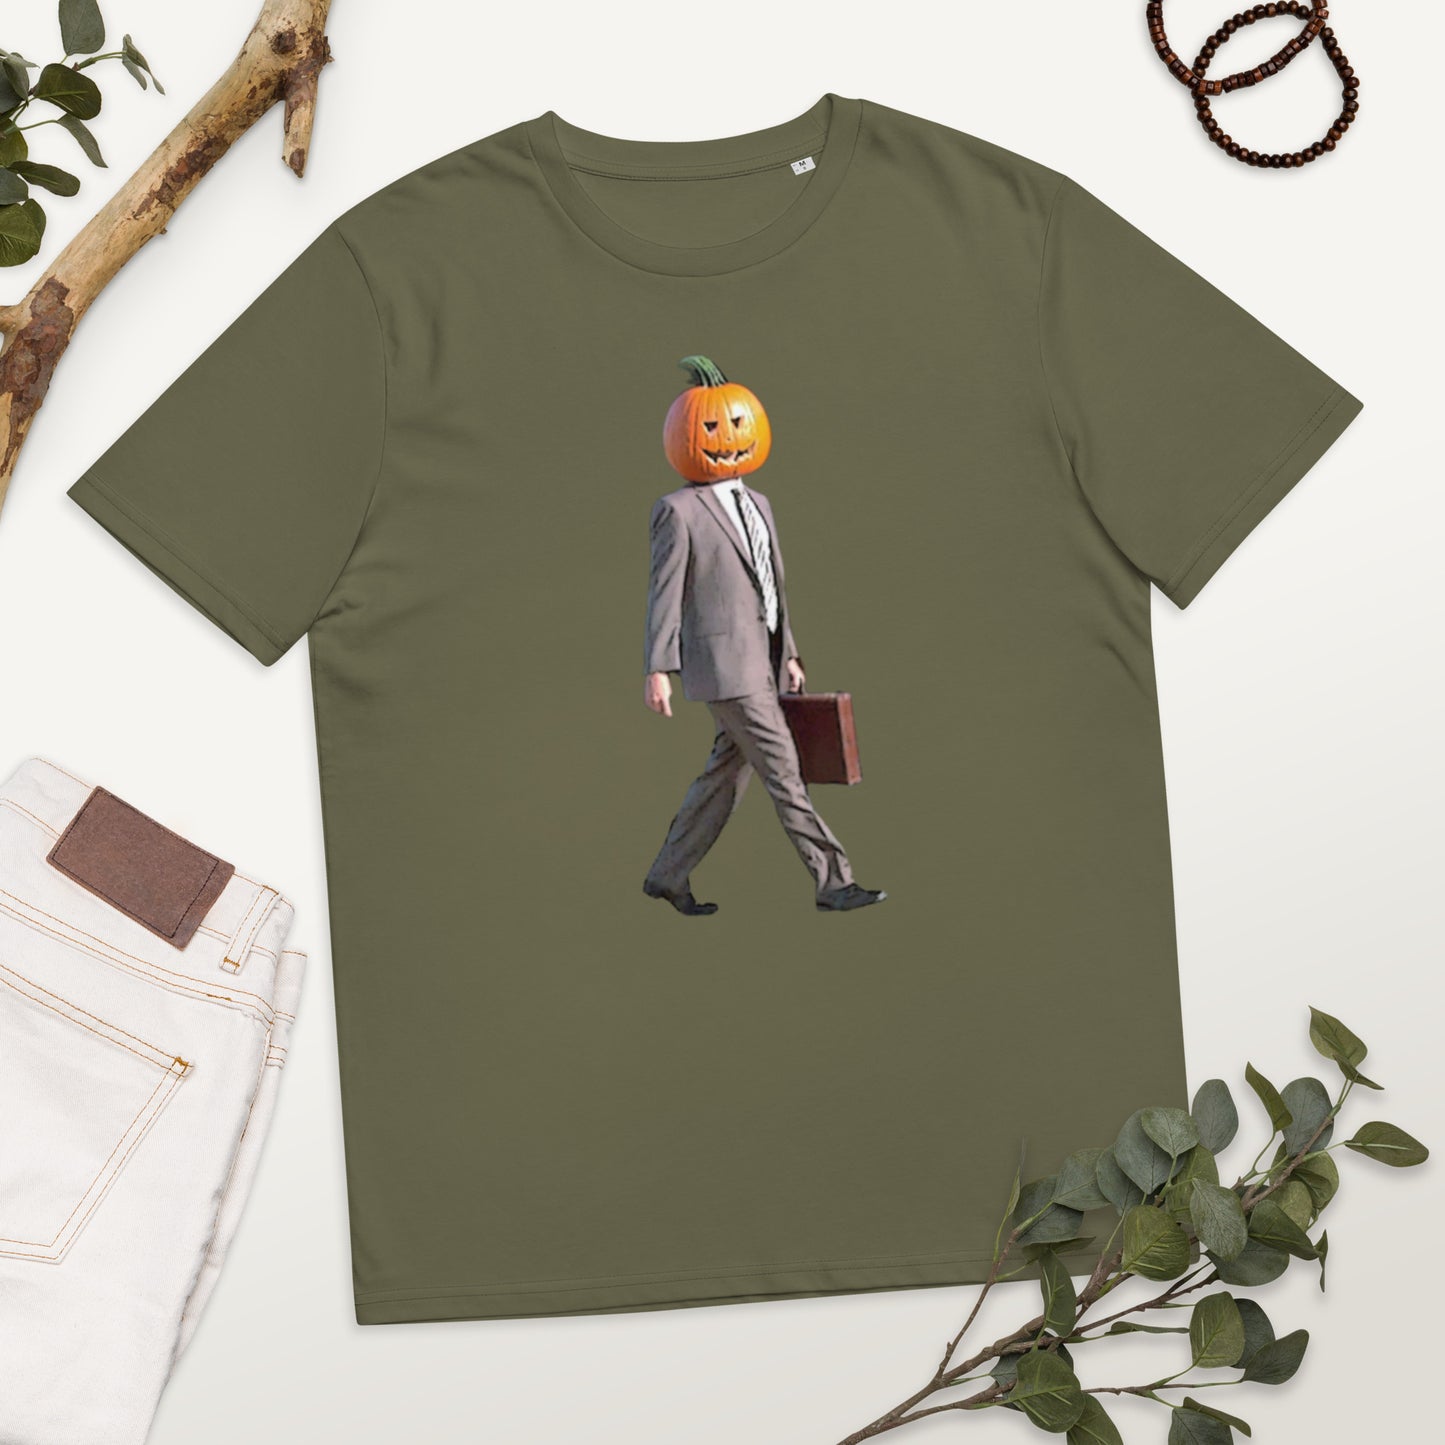 Pumpkin Dwight KiSS Unisex organic cotton t-shirt - The Office Halloween funny